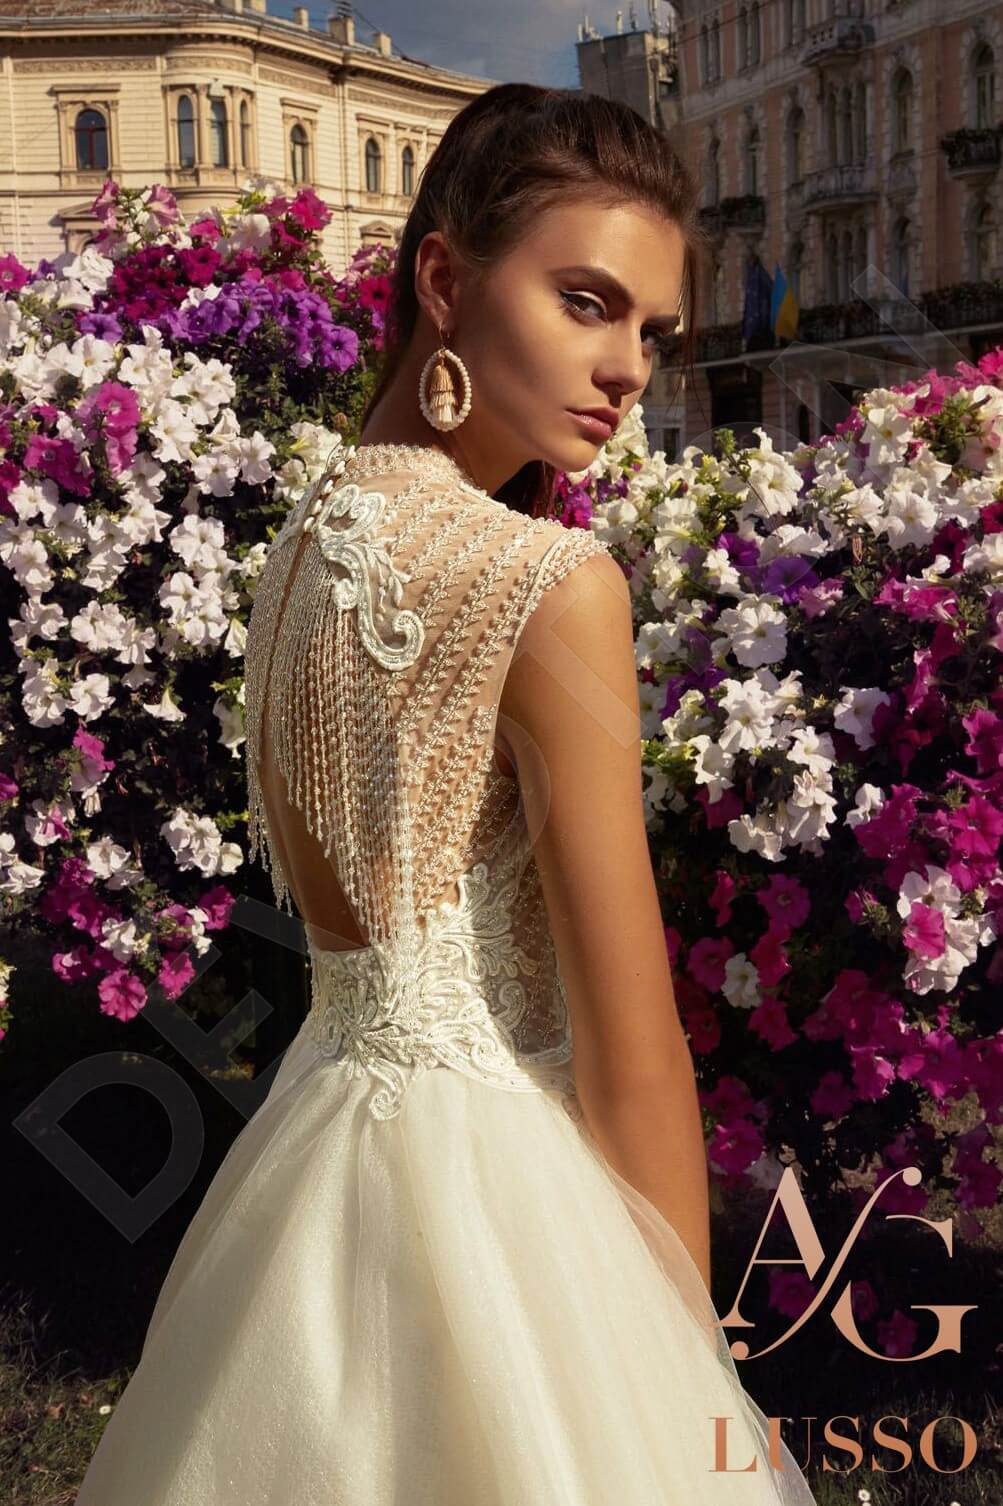 Florentina Open back A-line Sleeveless Wedding Dress 3